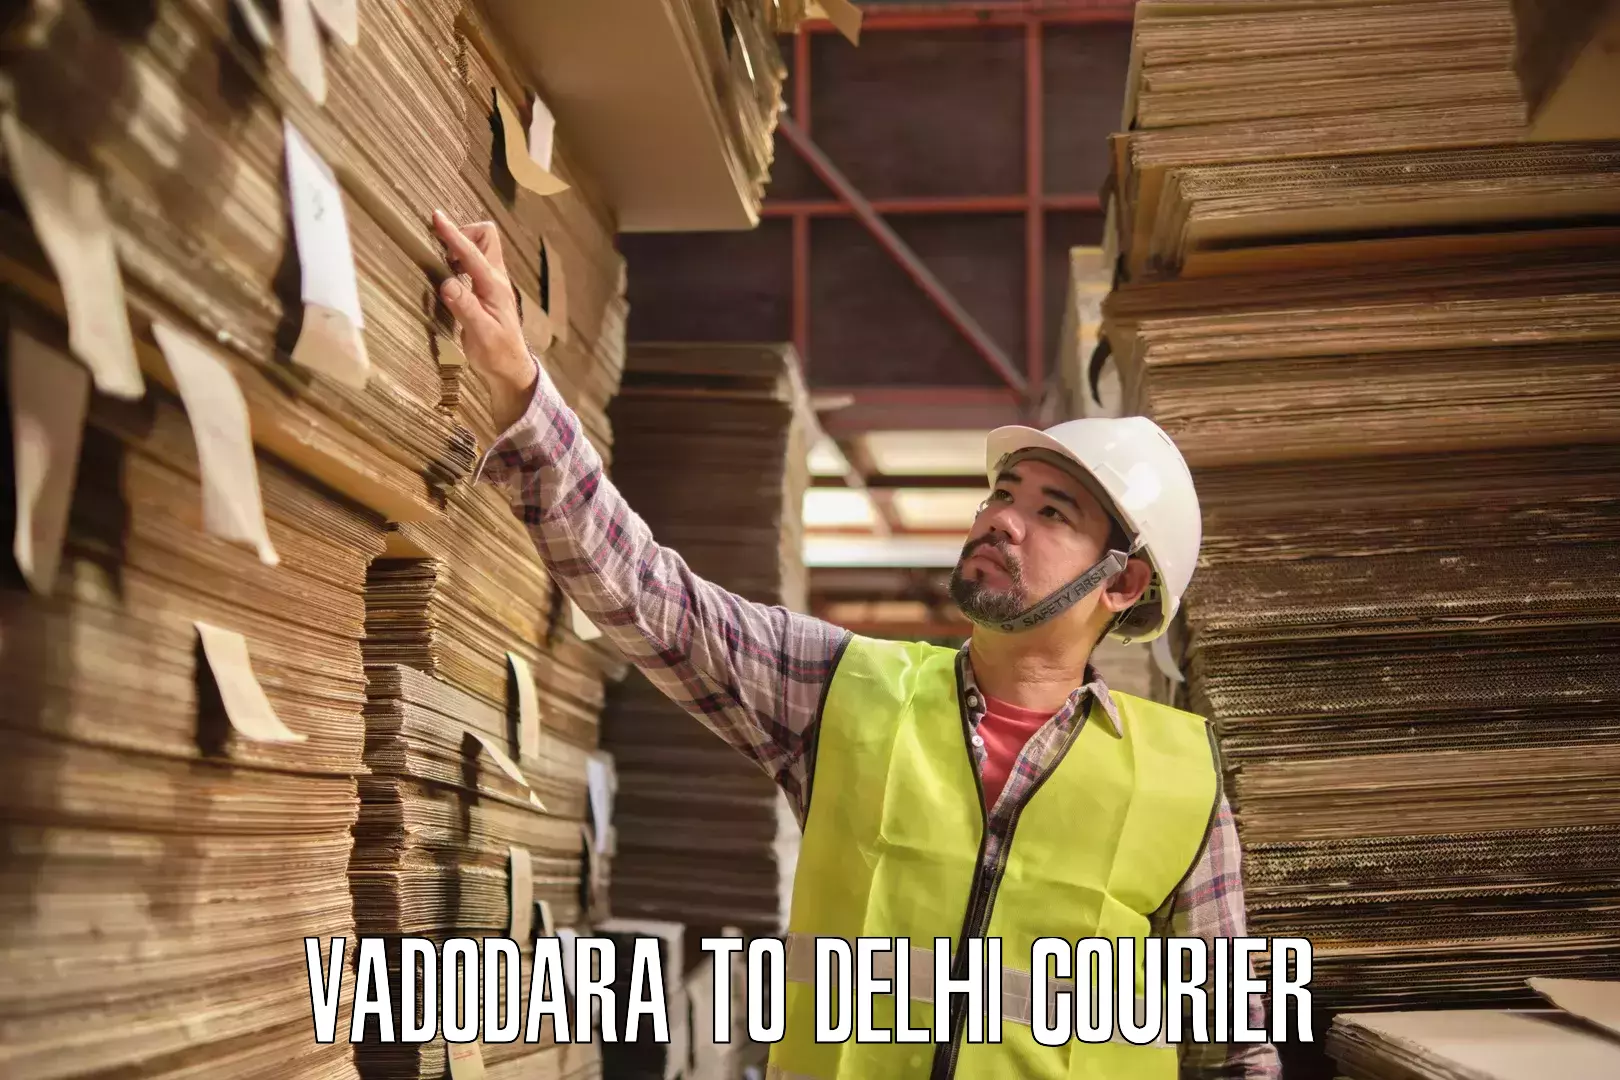 Enhanced shipping experience in Vadodara to Delhi